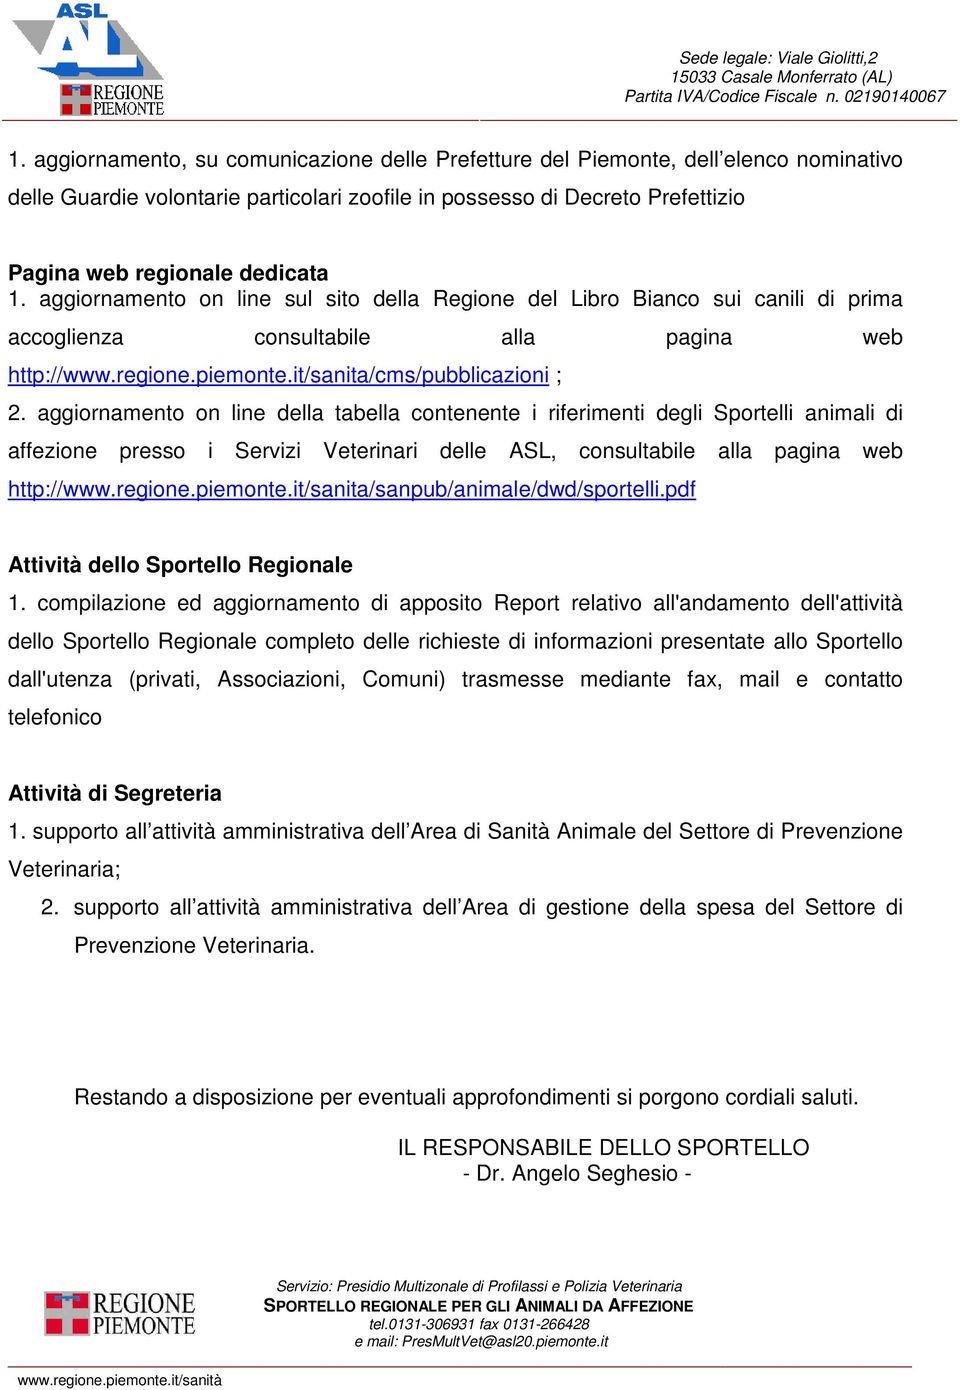 aggiornamento on line della tabella contenente i riferimenti degli Sportelli animali di affezione presso i Servizi Veterinari delle ASL, consultabile alla pagina web http://www.regione.piemonte.